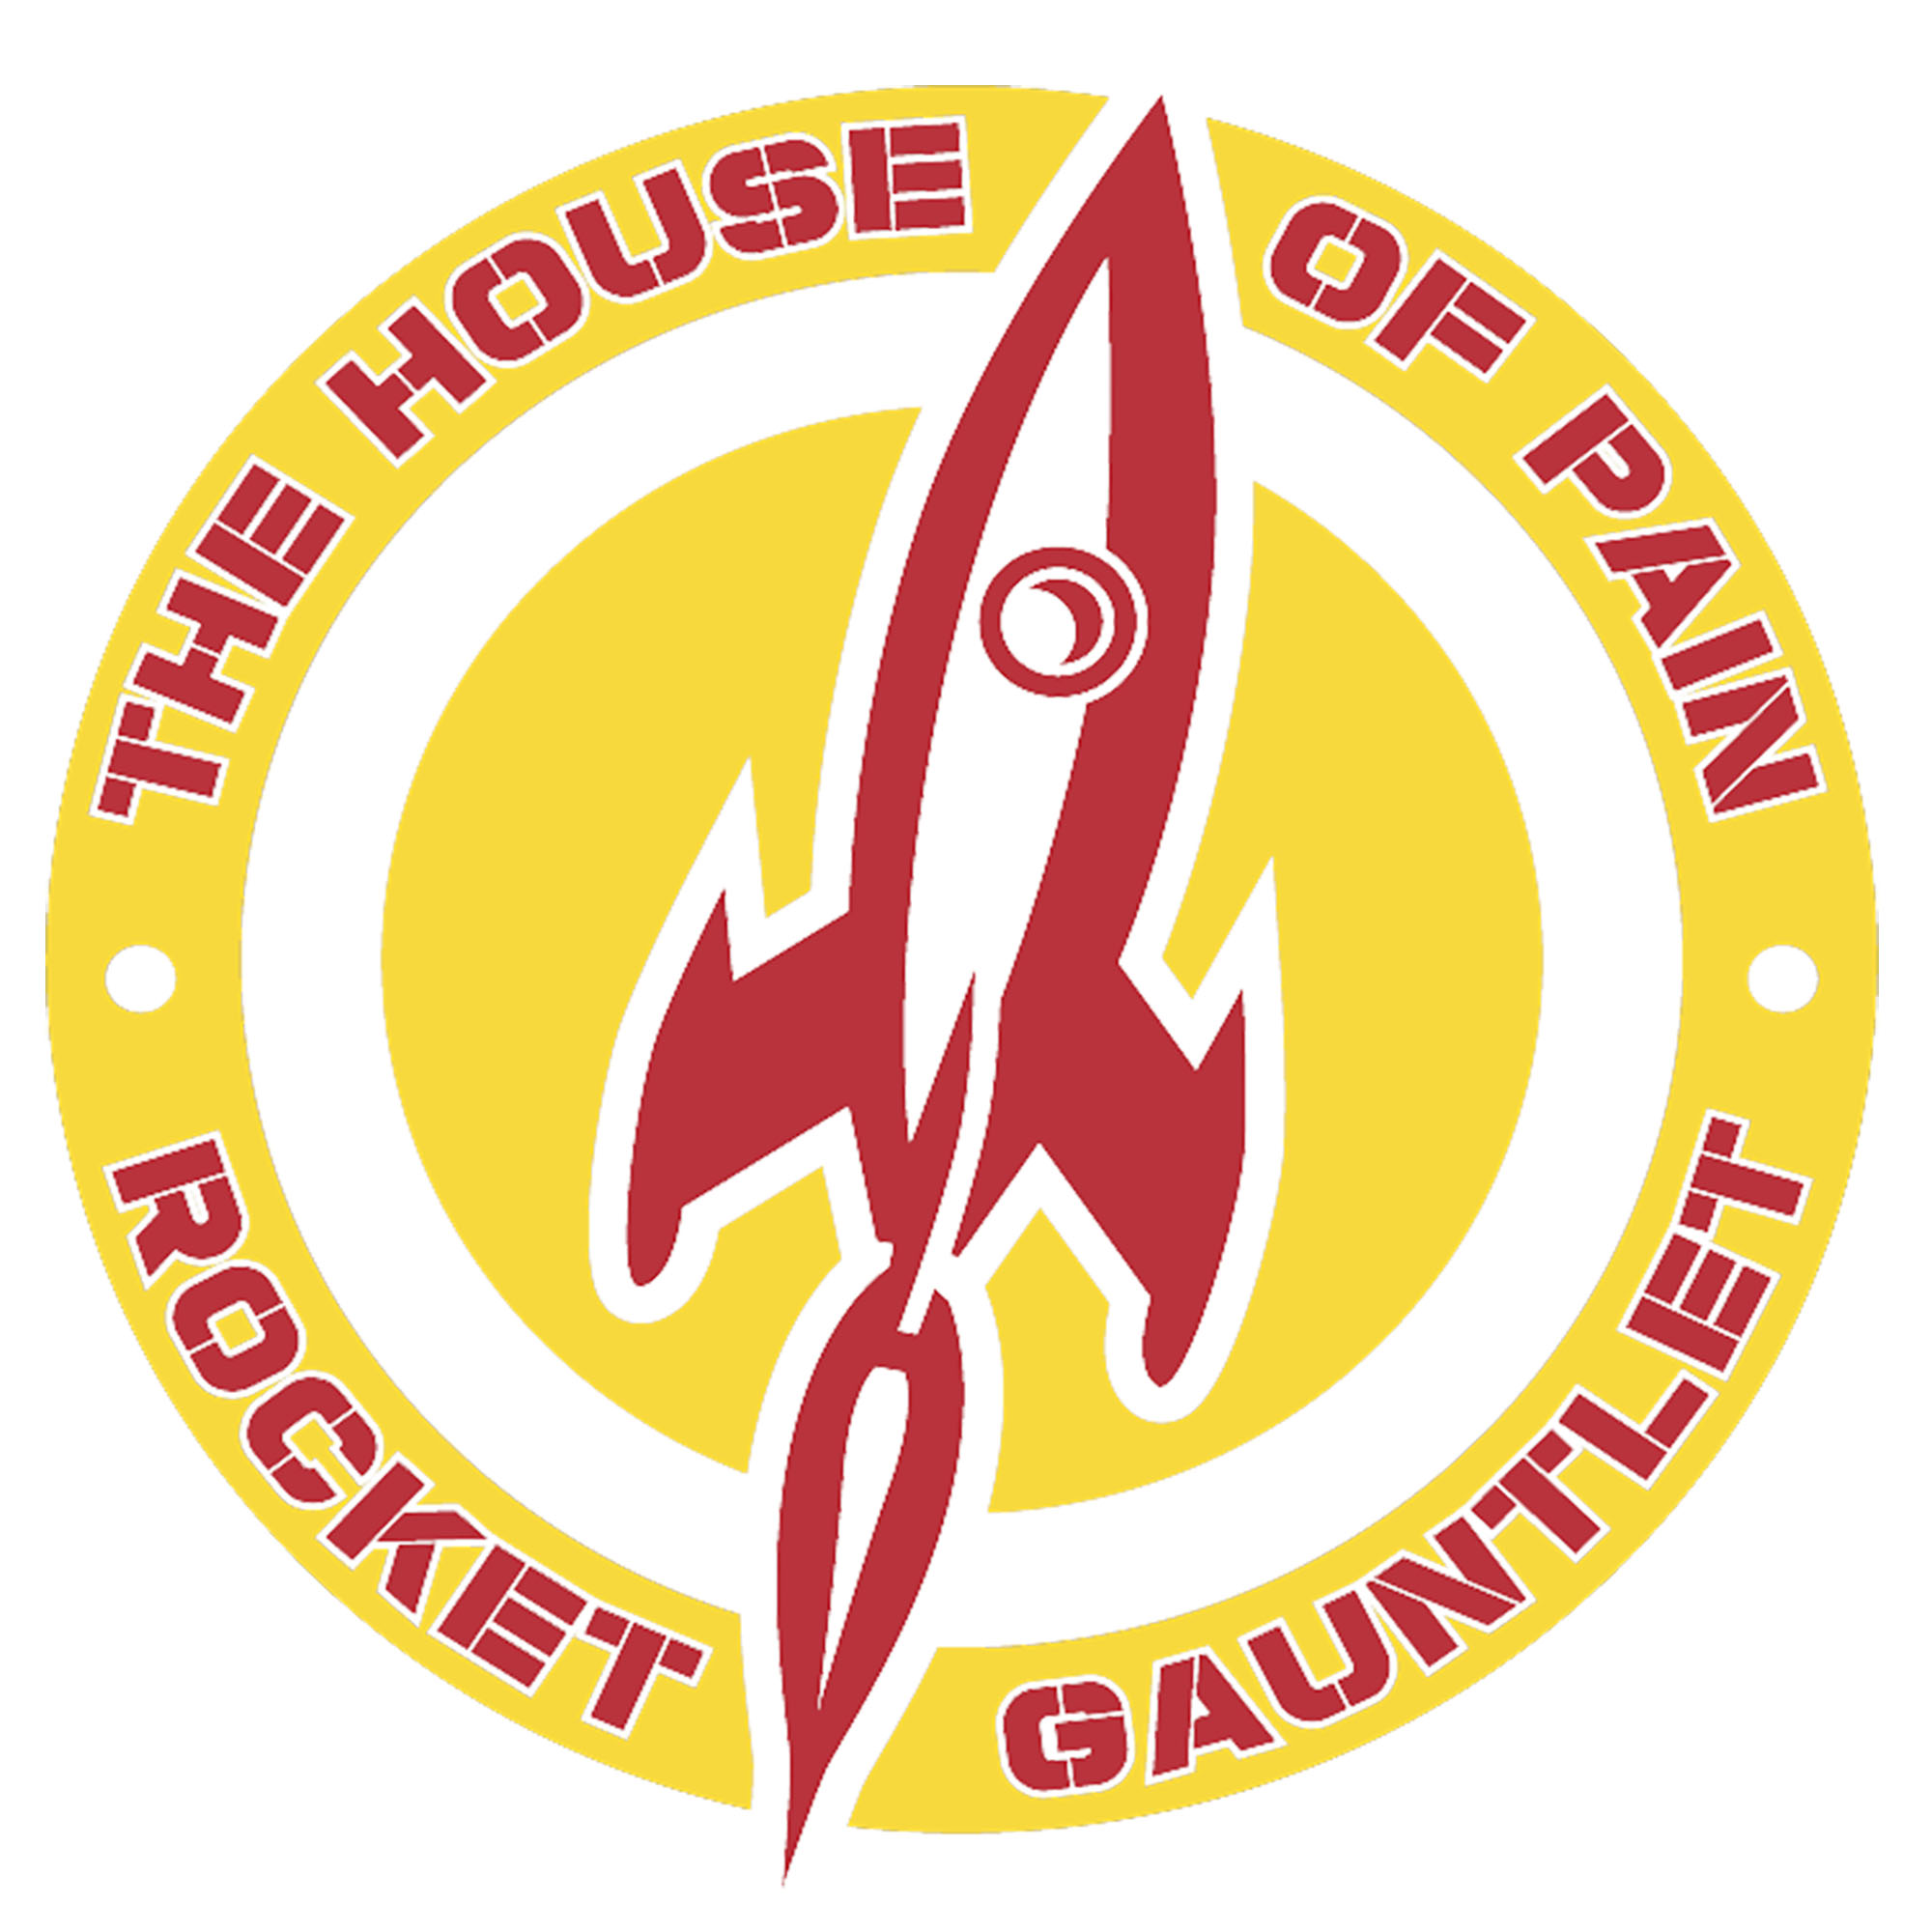 The Rocket Gauntlet